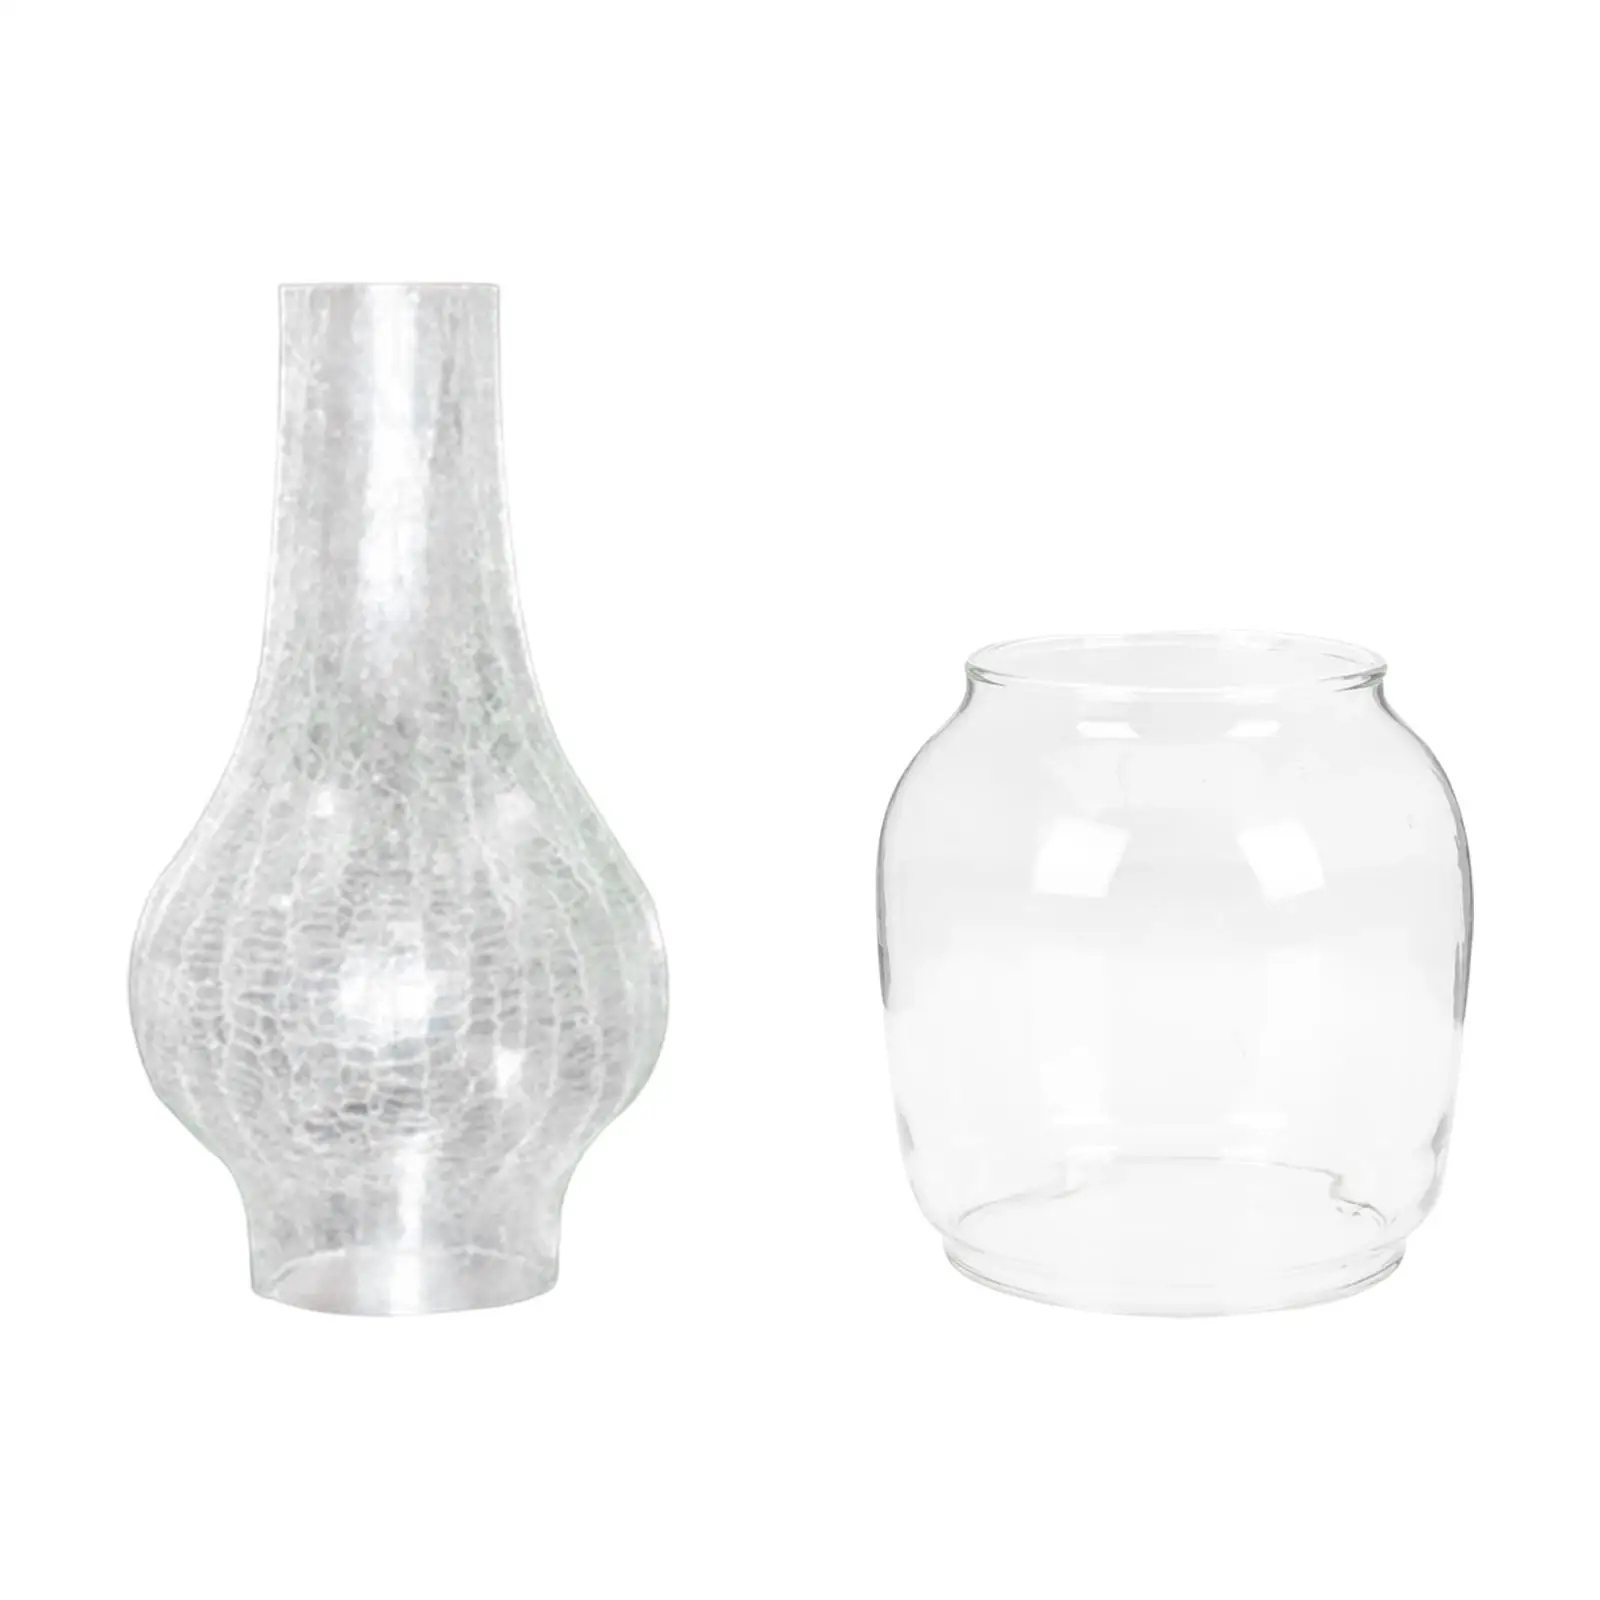 Oil Lamp Chimney Lamp Shade Kerosene Glass Shade Light Cover Decor Craft for